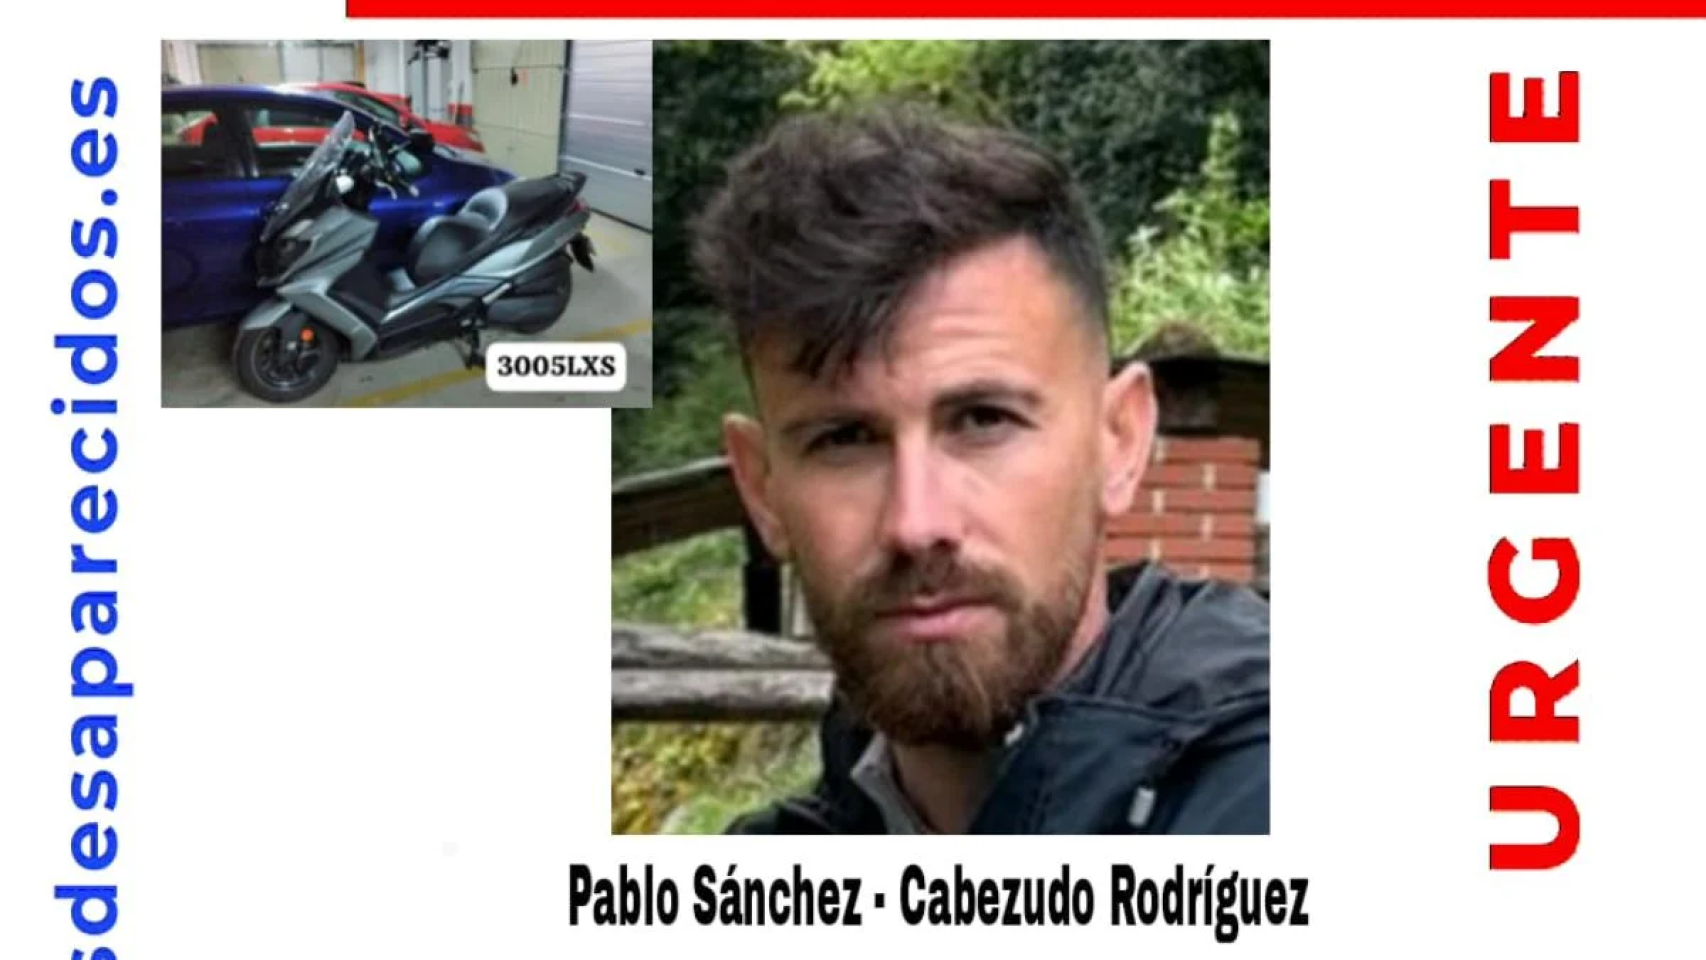 La Policía se moviliza para encontrar a Pablo, el agente desaparecido: buscan su moto y estudian si fue un accidente